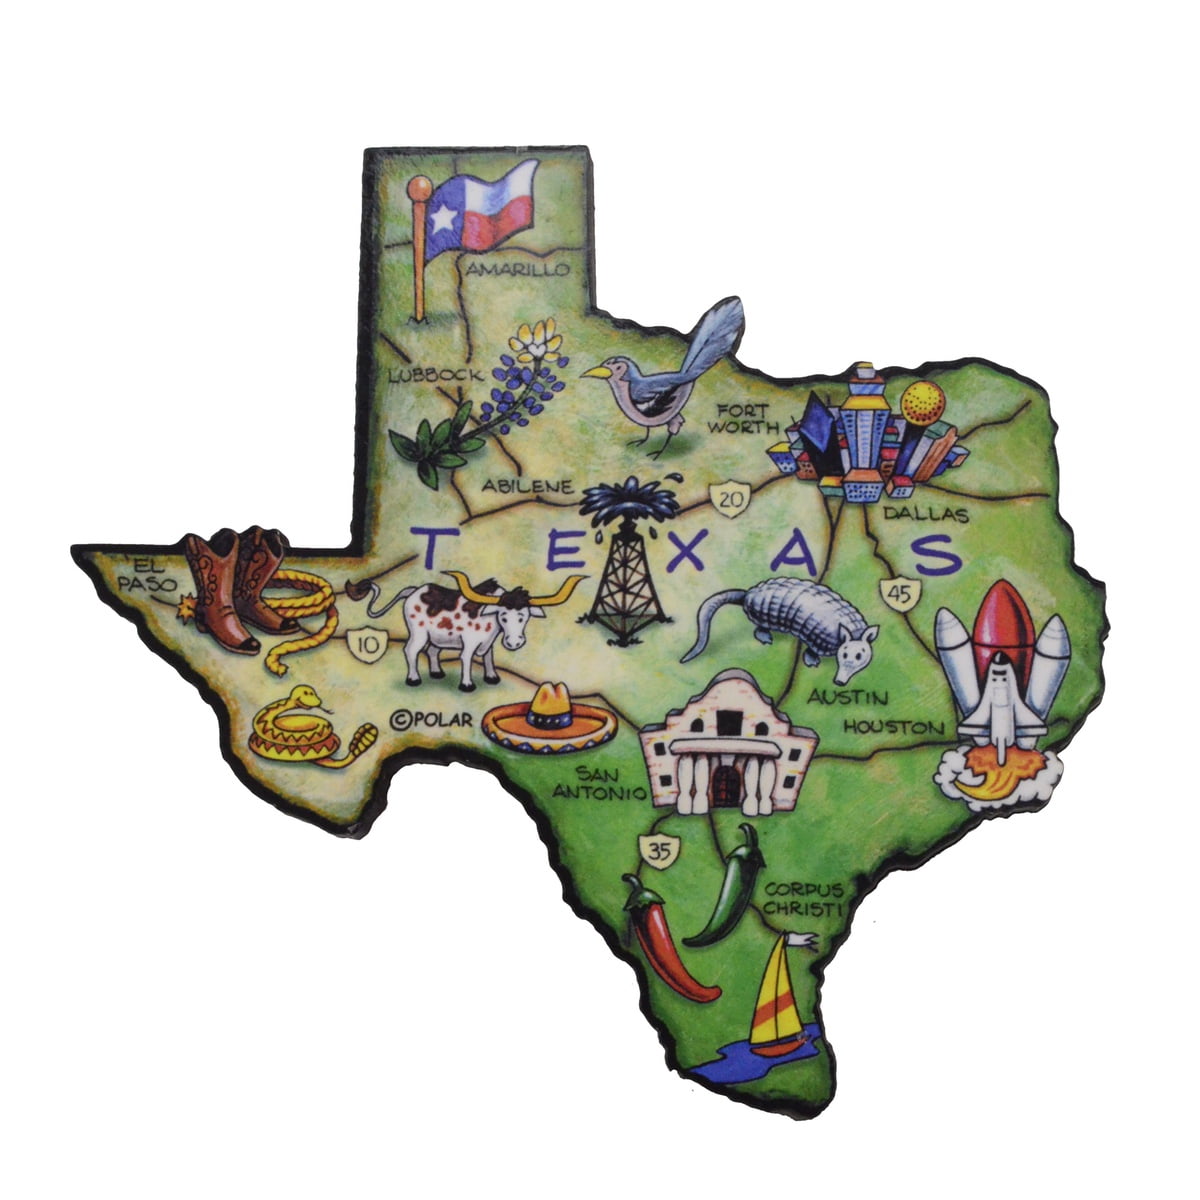 Souvenir Flexible Fridge Magnet Texas Rangers GLOBE LIFE PARK 